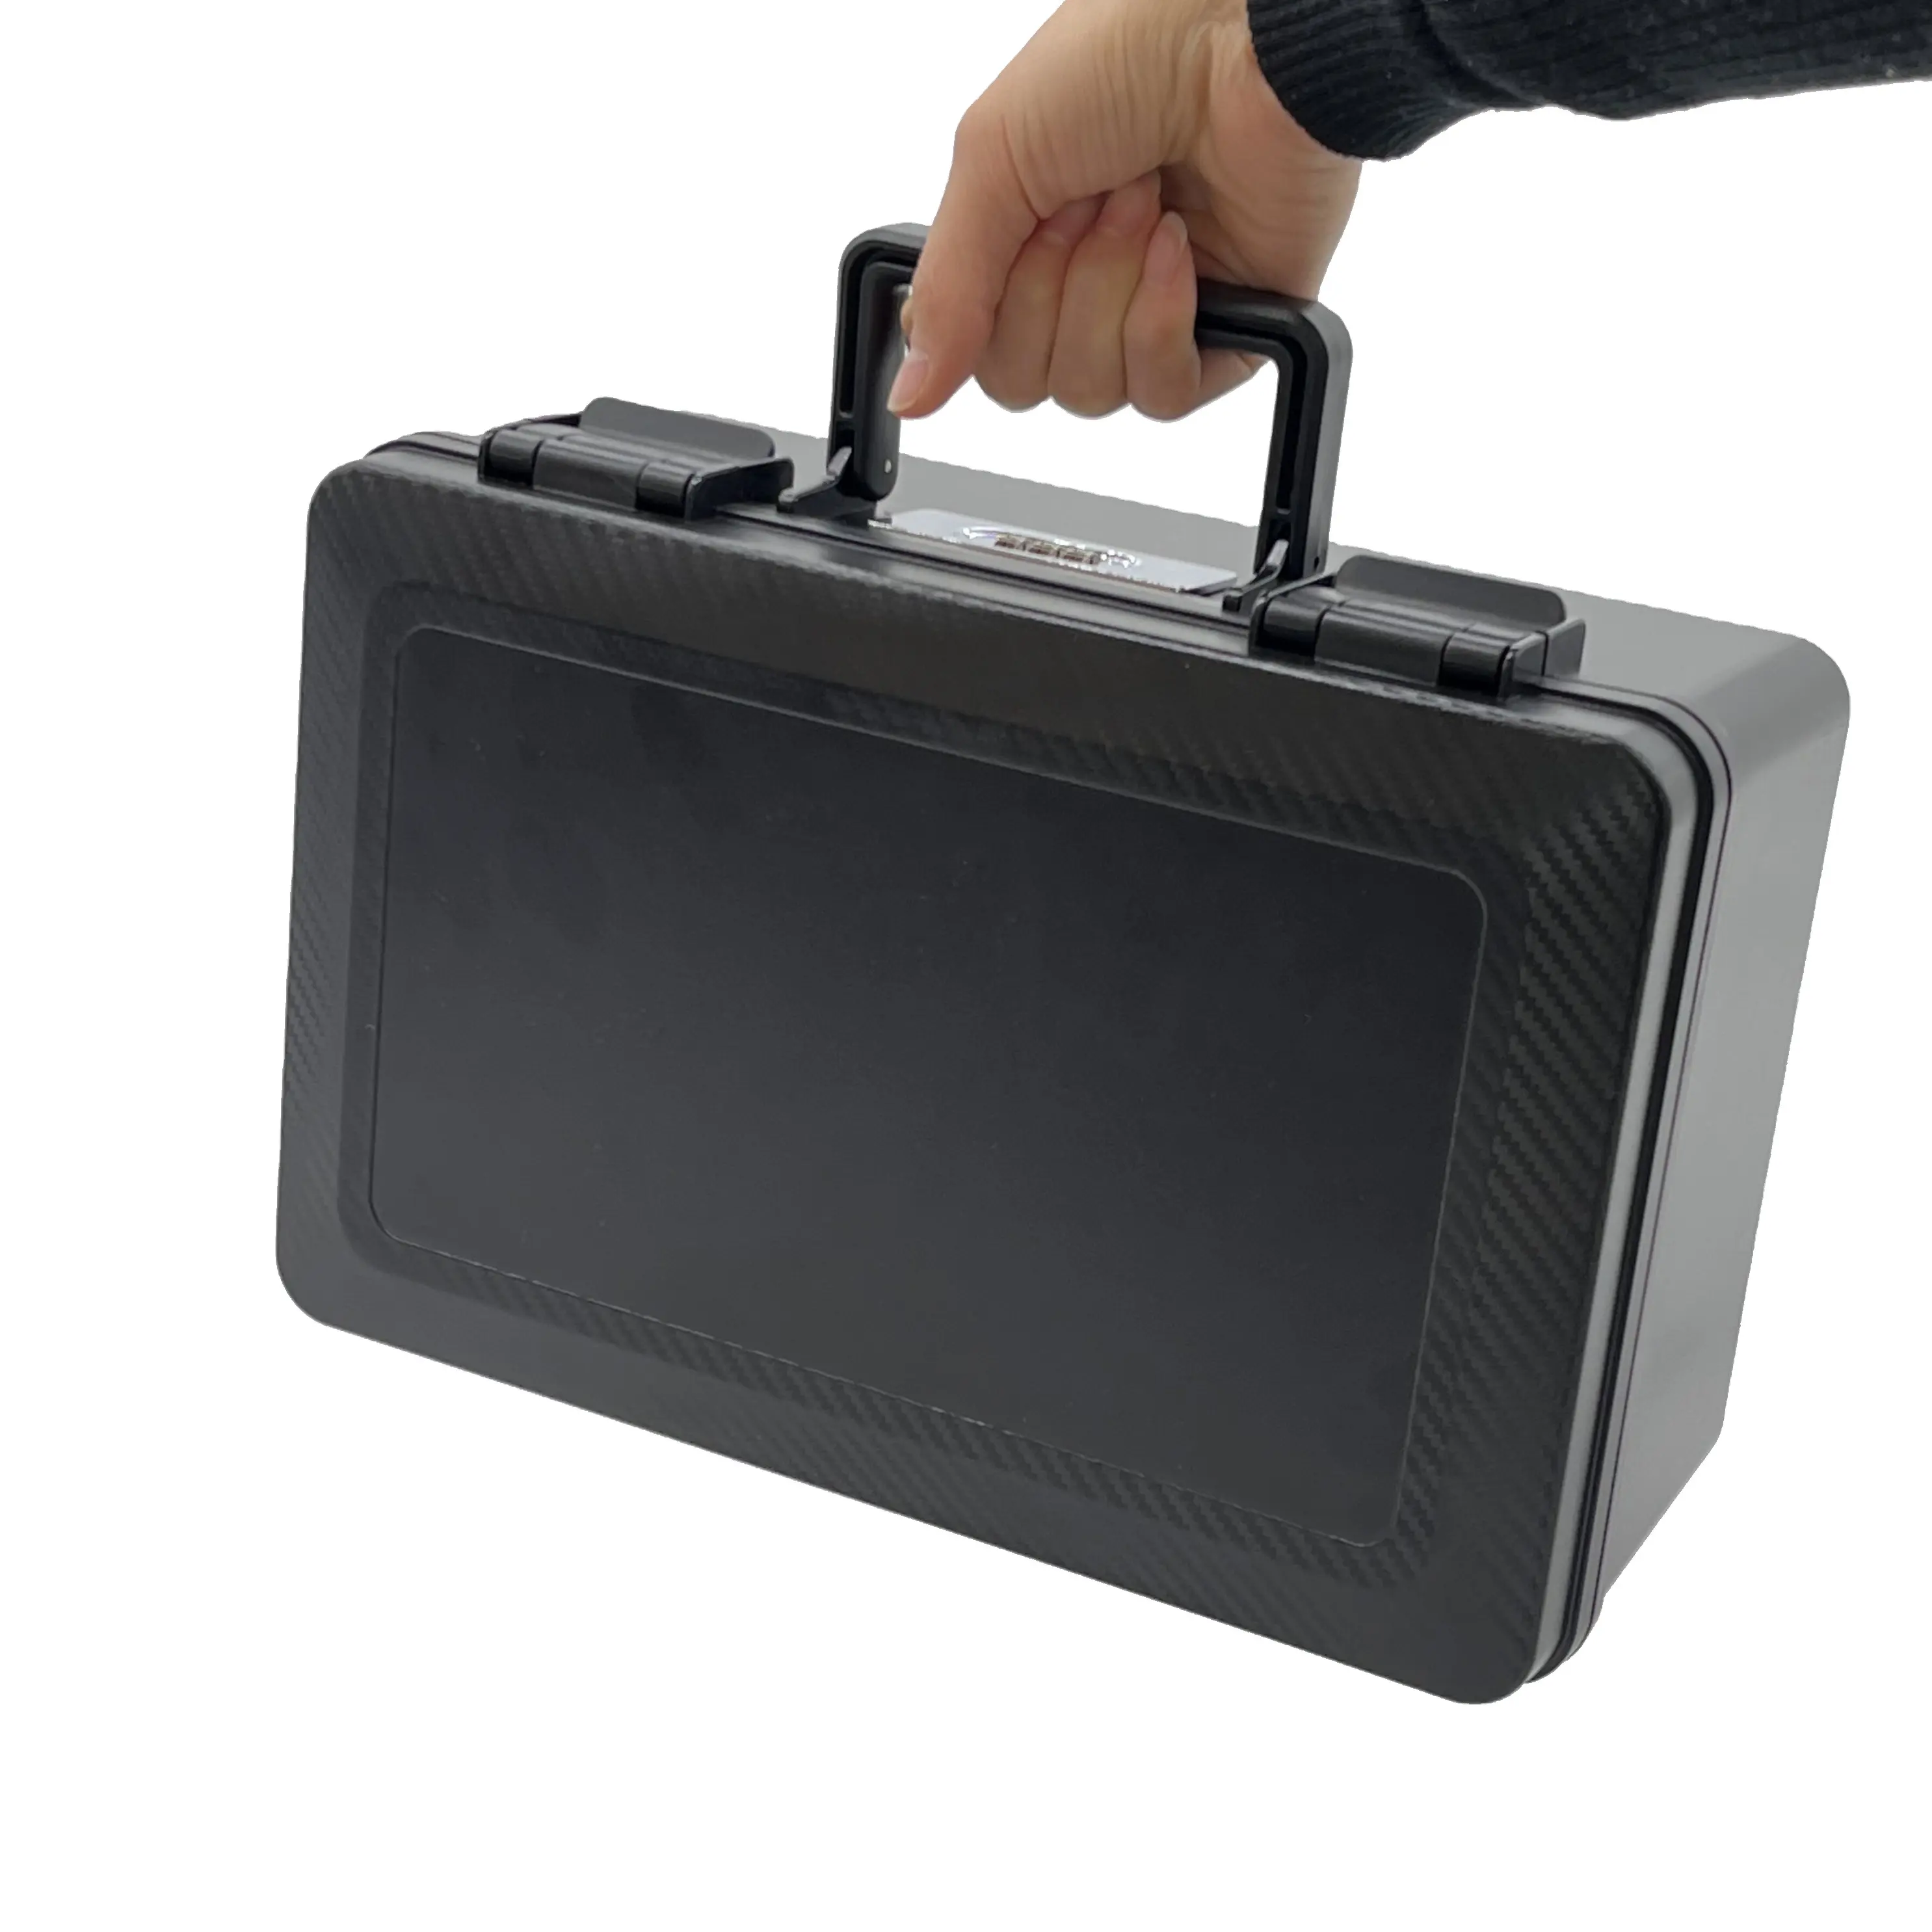 Pelican case waterproof multifunctional equipment hard case plastic instrument case